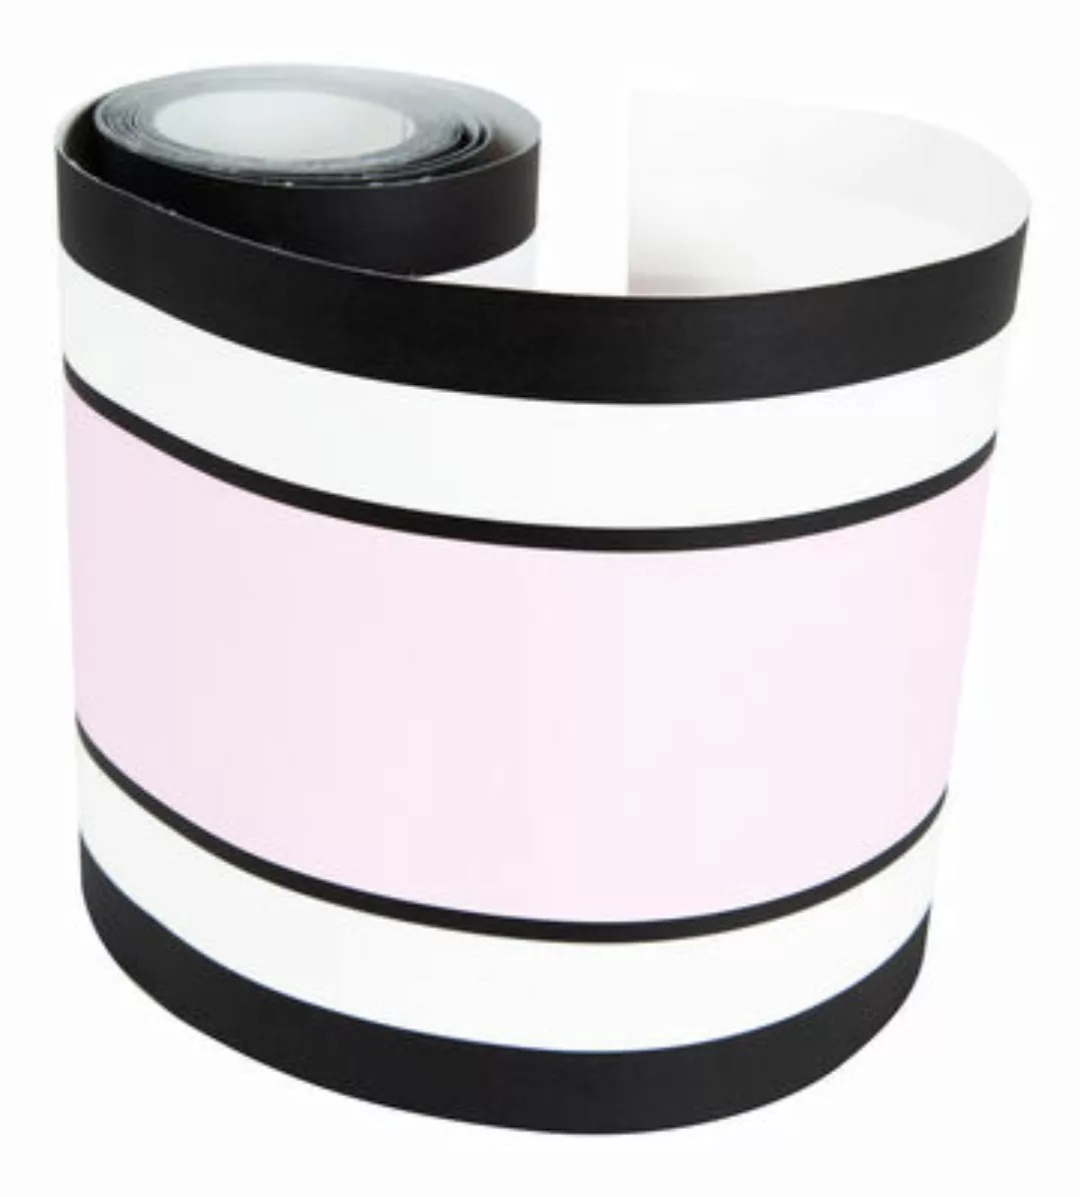 Tapete La frise papierfaser rosa / 18 cm x 500 cm - Maison Sarah Lavoine - günstig online kaufen